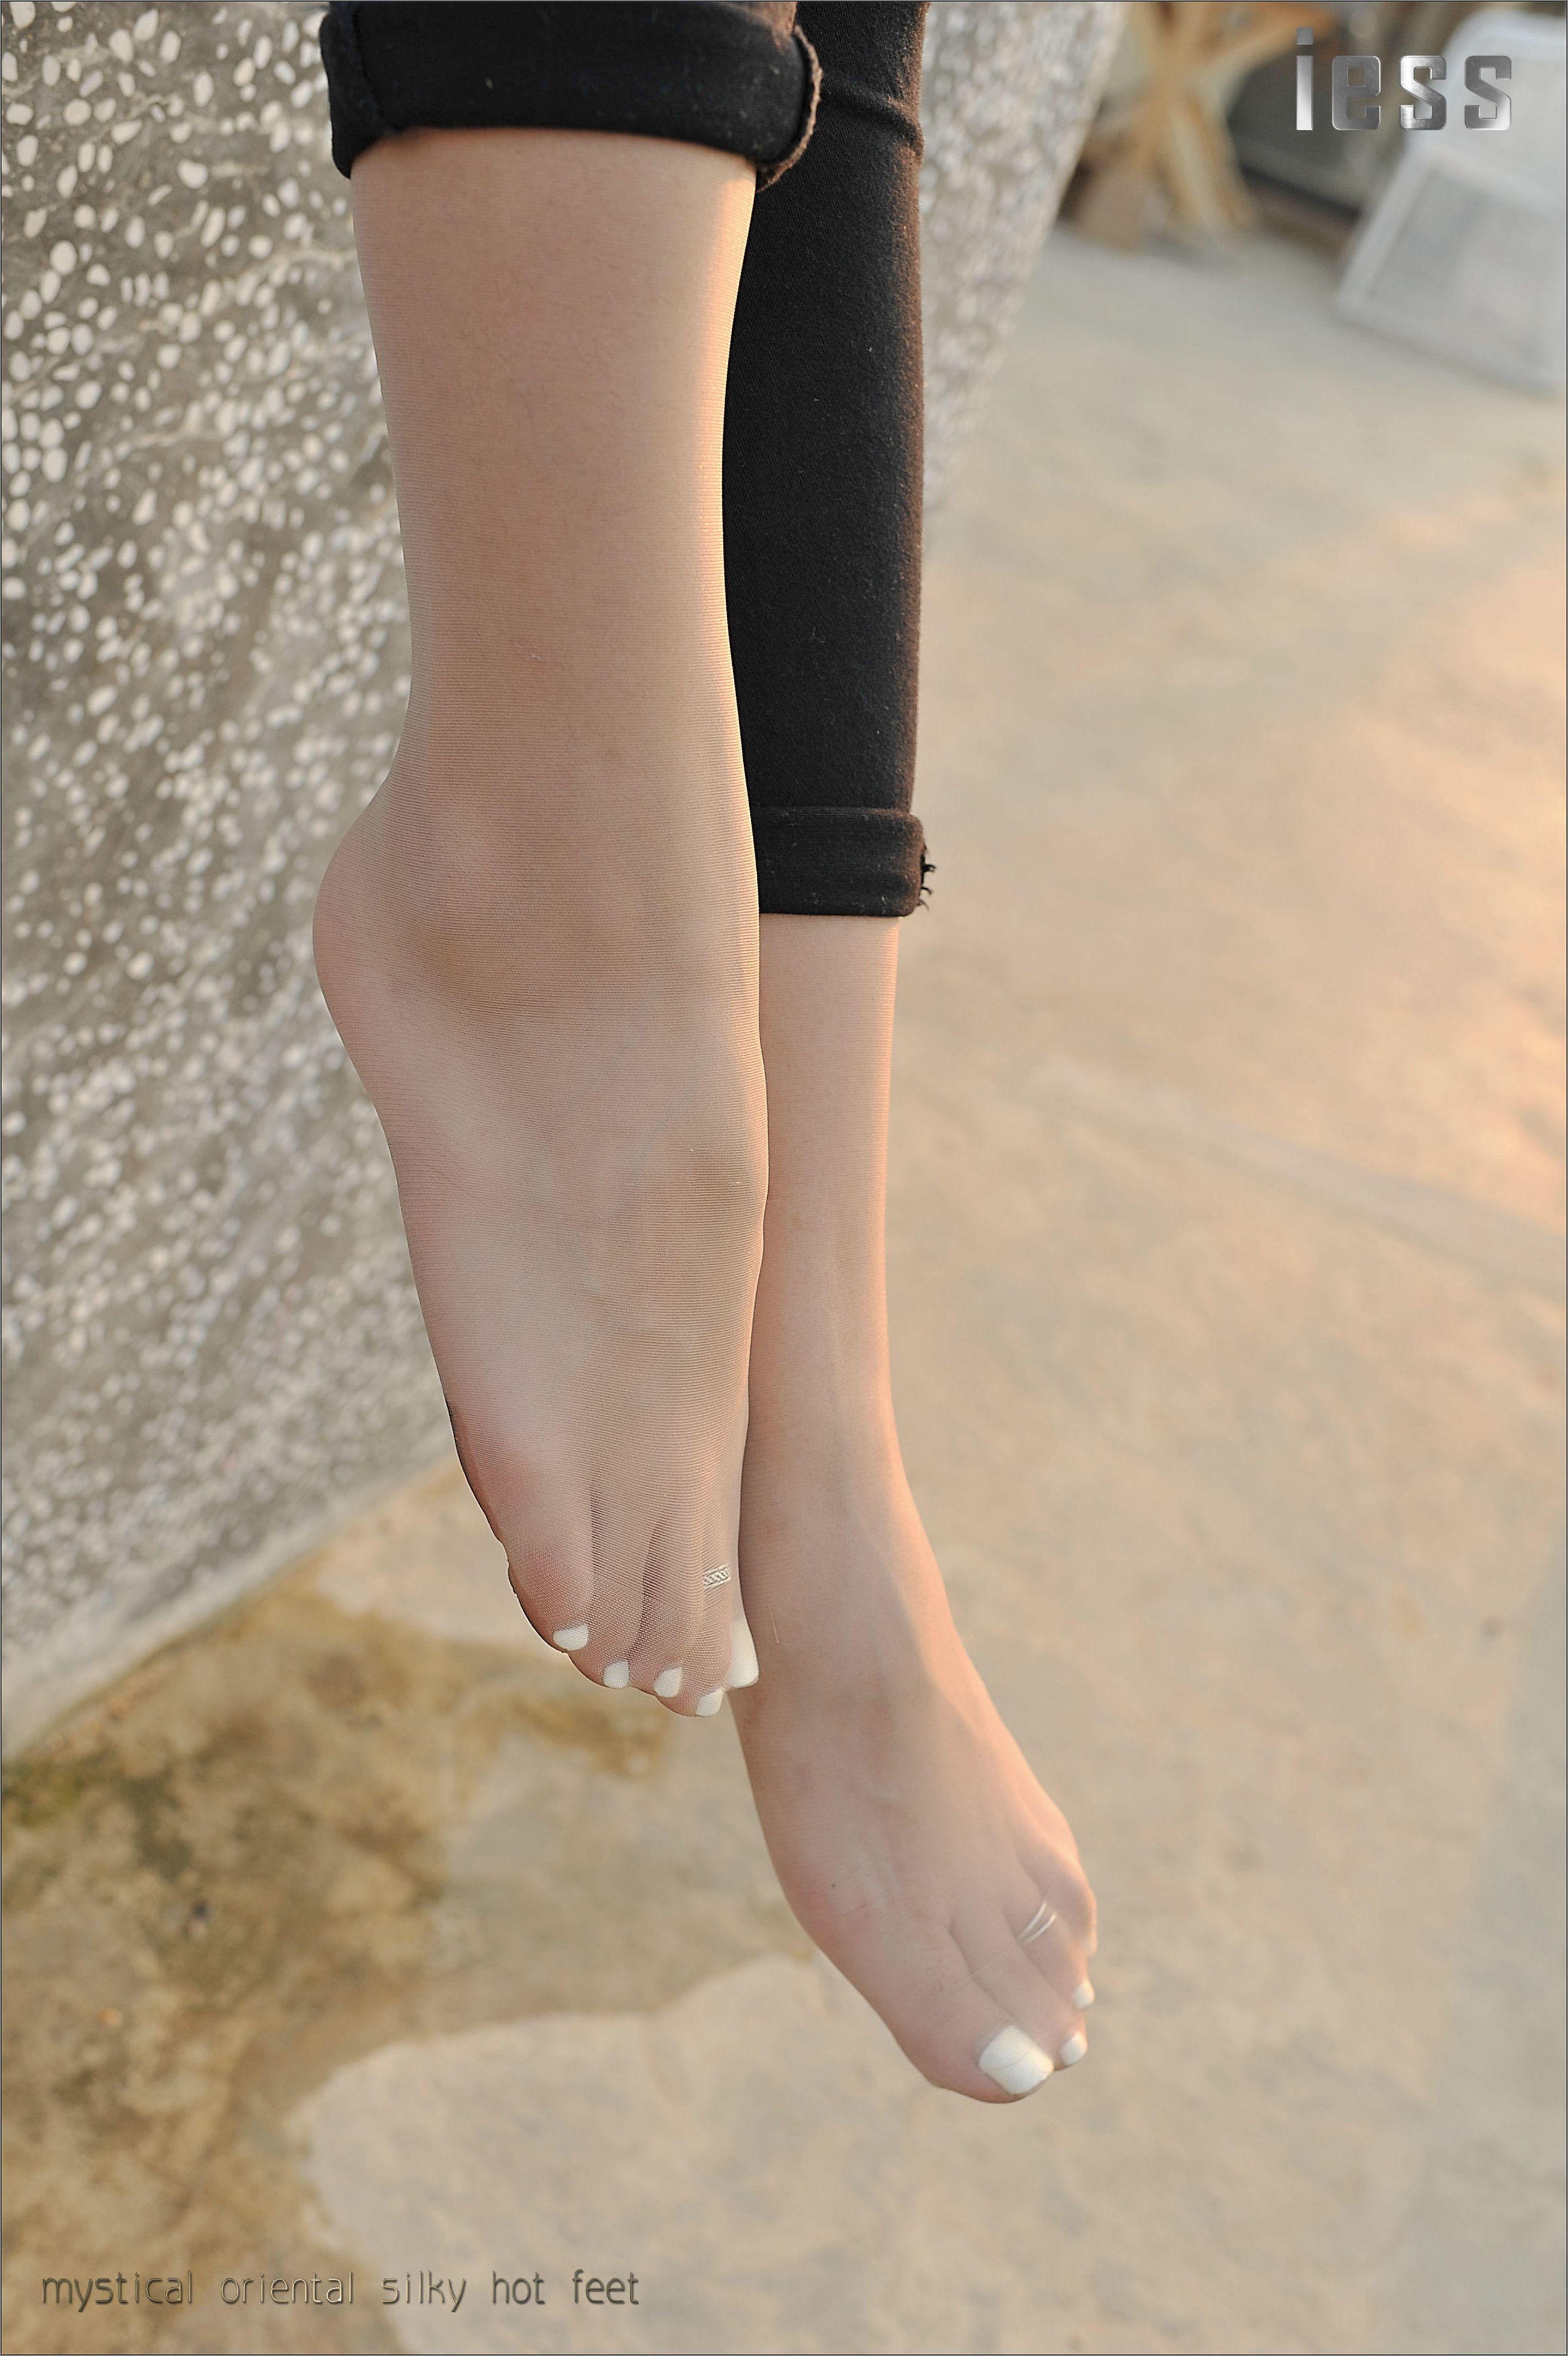 [IESS异思趣向]Model SASA莎莎 白色短袖与黑色紧身裤加肉色丝袜美腿性感写真集,